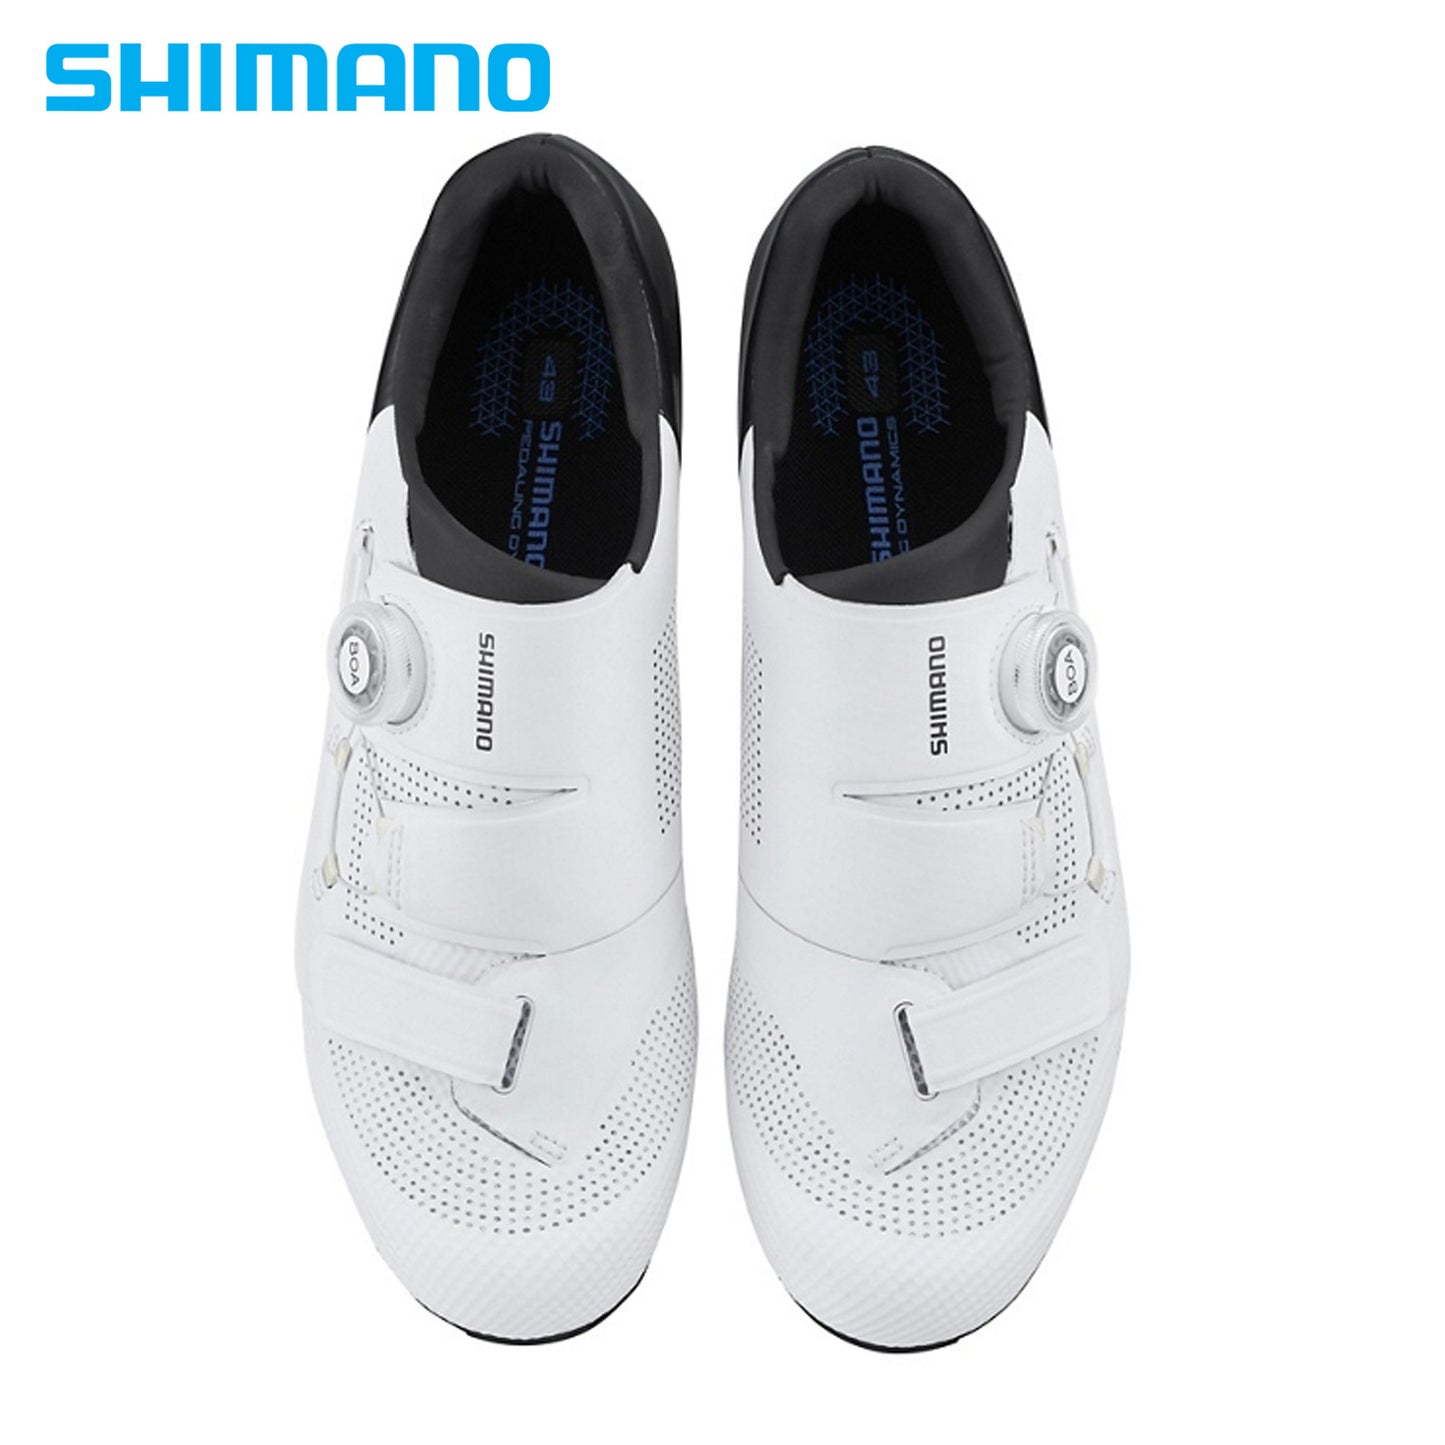 Shimano RC502 Road Bike Shoes (SH-RC502) - White